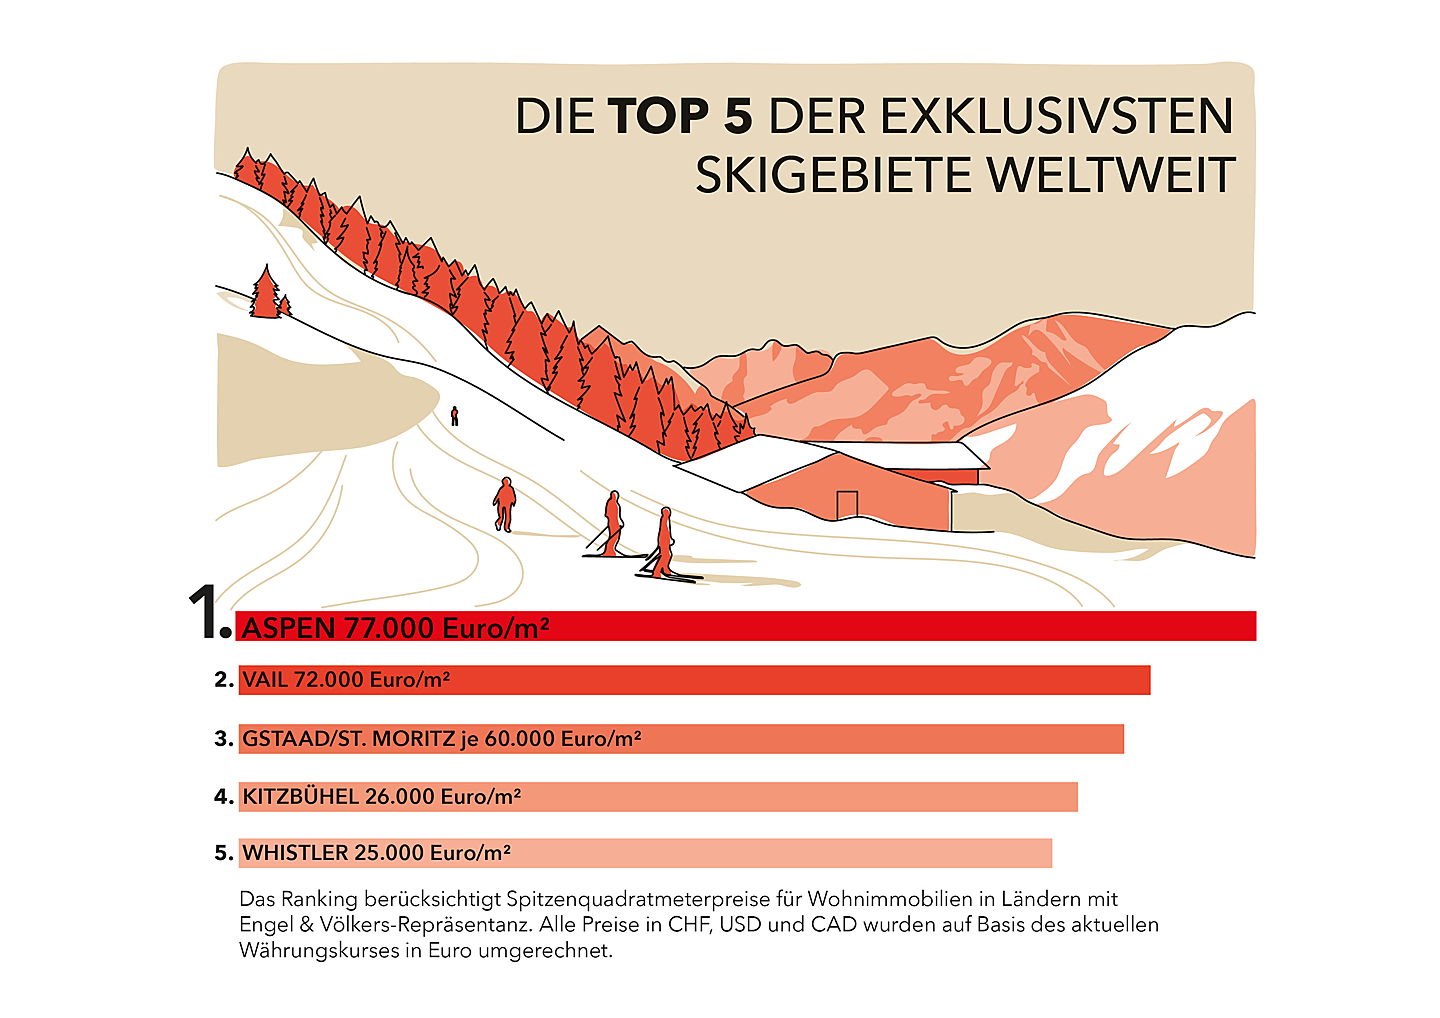  Dietikon, Schweiz
- Engel & Völkers Ski-Ranking 2022/23: Die Top 5 der exklusivsten Skigebiete weltweit.
(Bildquelle: Engel & Völkers)